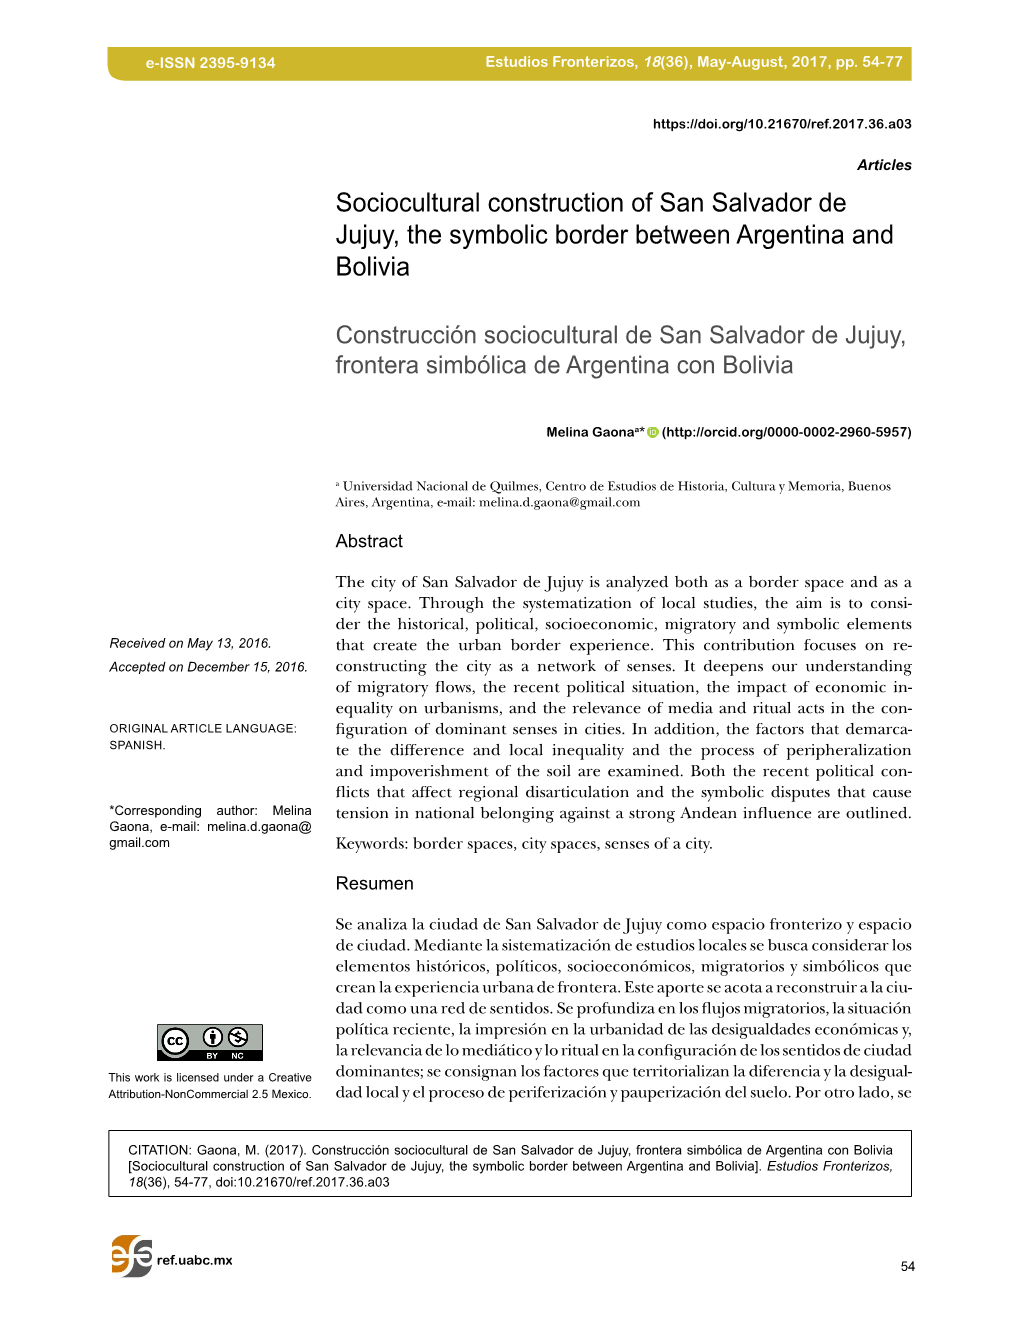 Sociocultural Construction of San Salvador De Jujuy, the Symbolic Border Between Argentina and Bolivia